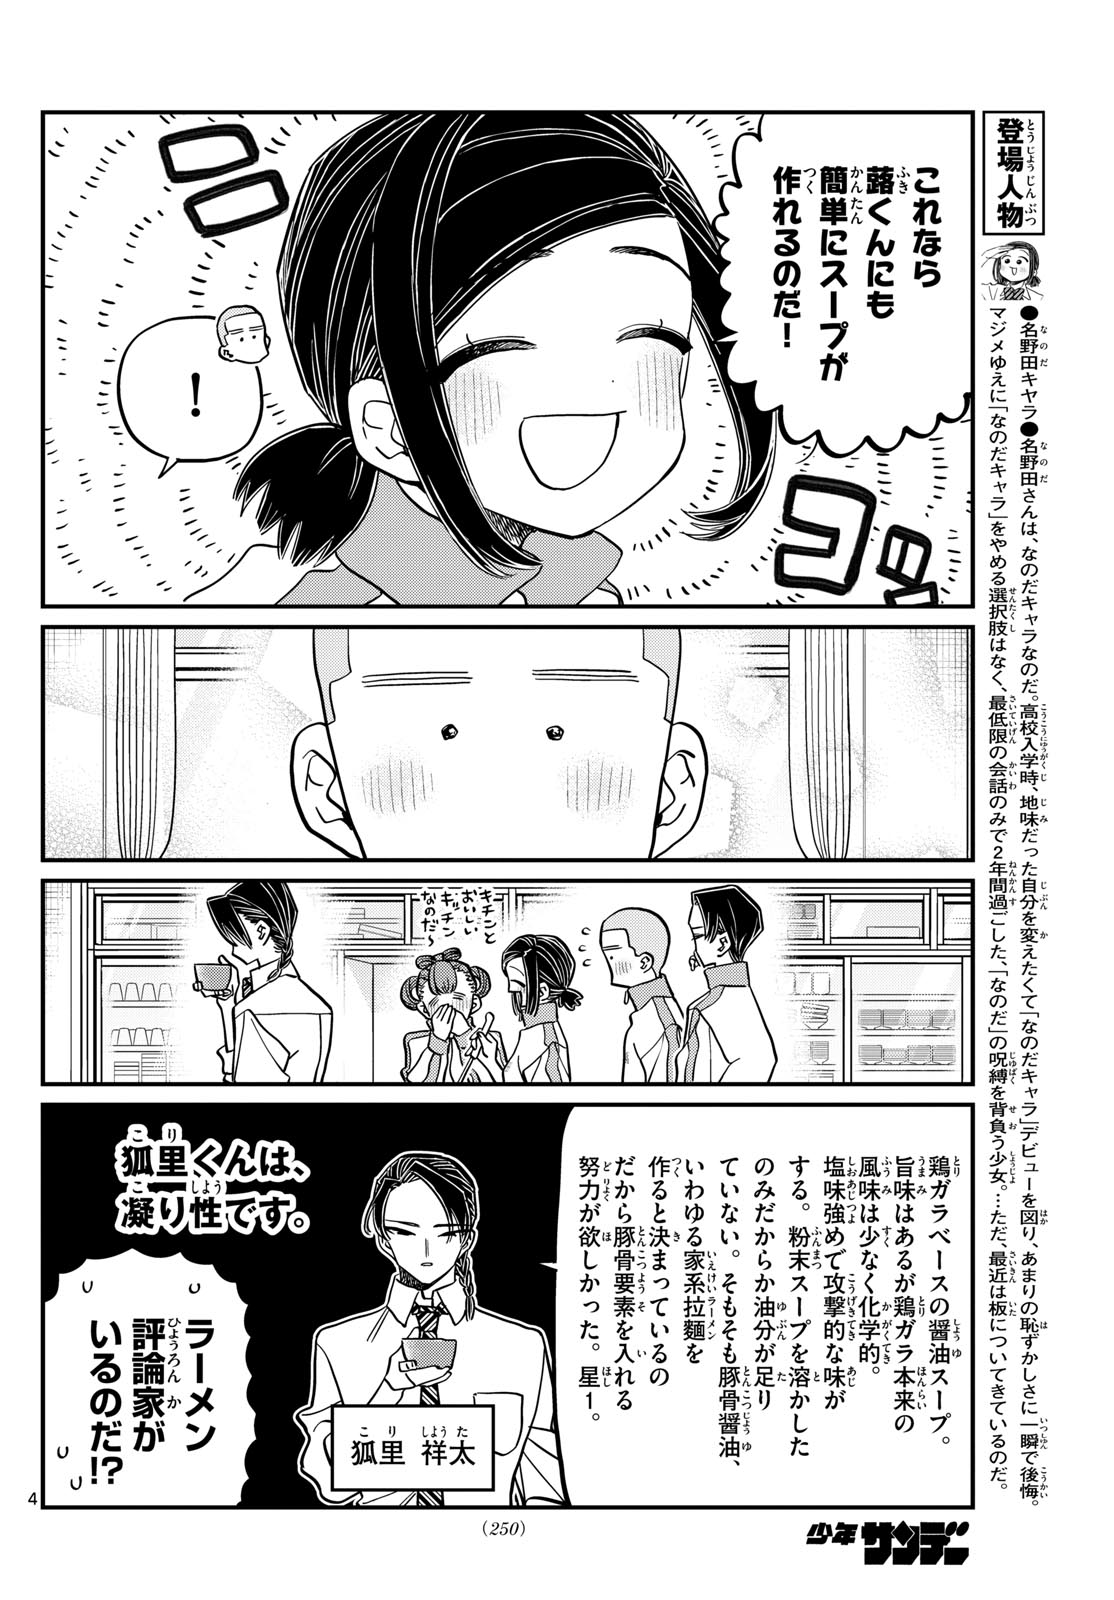 Komi-san wa Komyushou Desu - Chapter 449 - Page 4